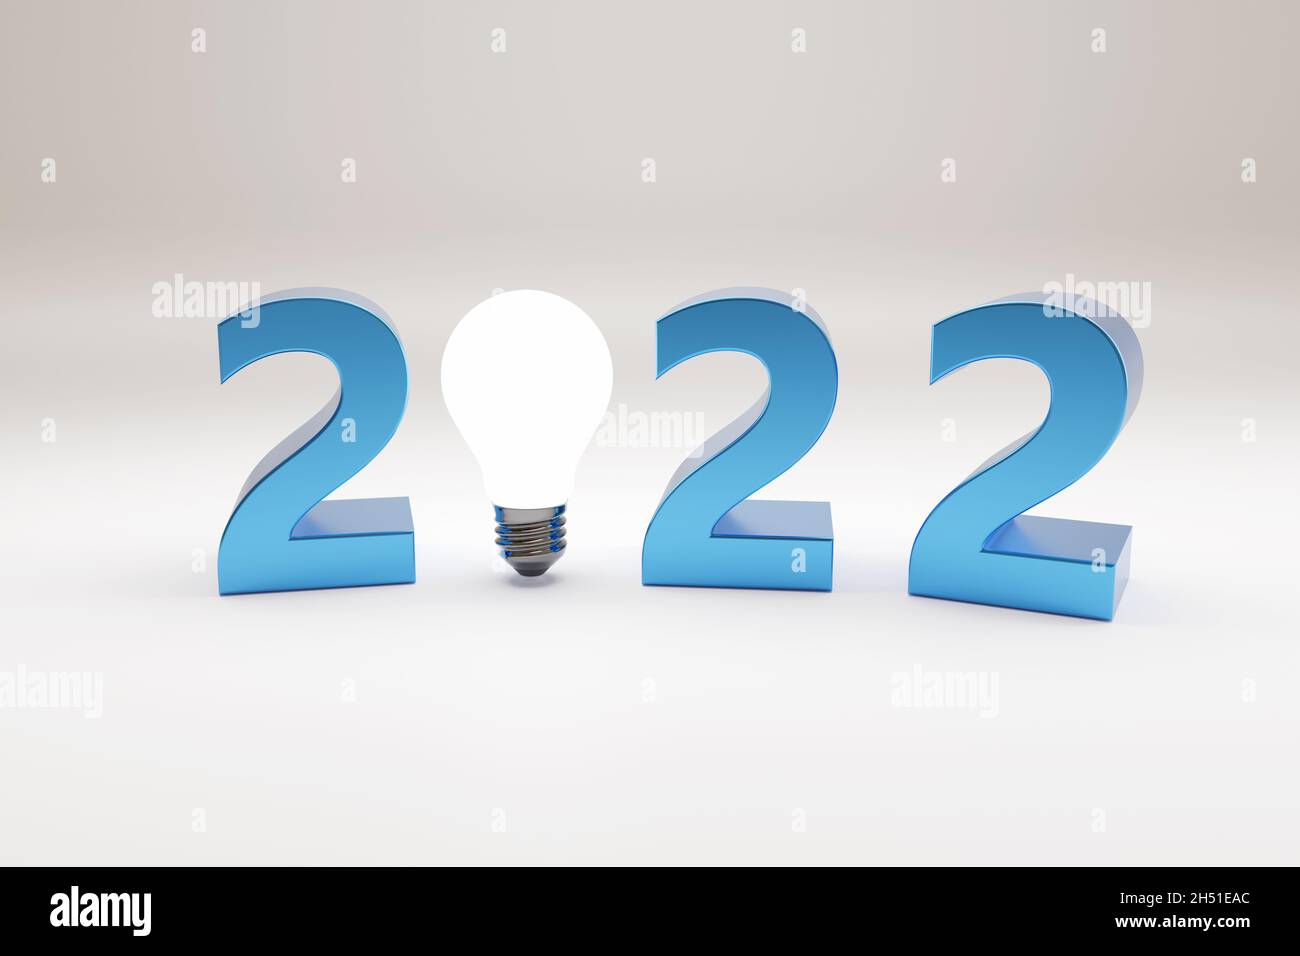 2022 texte avec ampoule en trois dimensions.Concept de la nouvelle année.illustration 3d. Banque D'Images